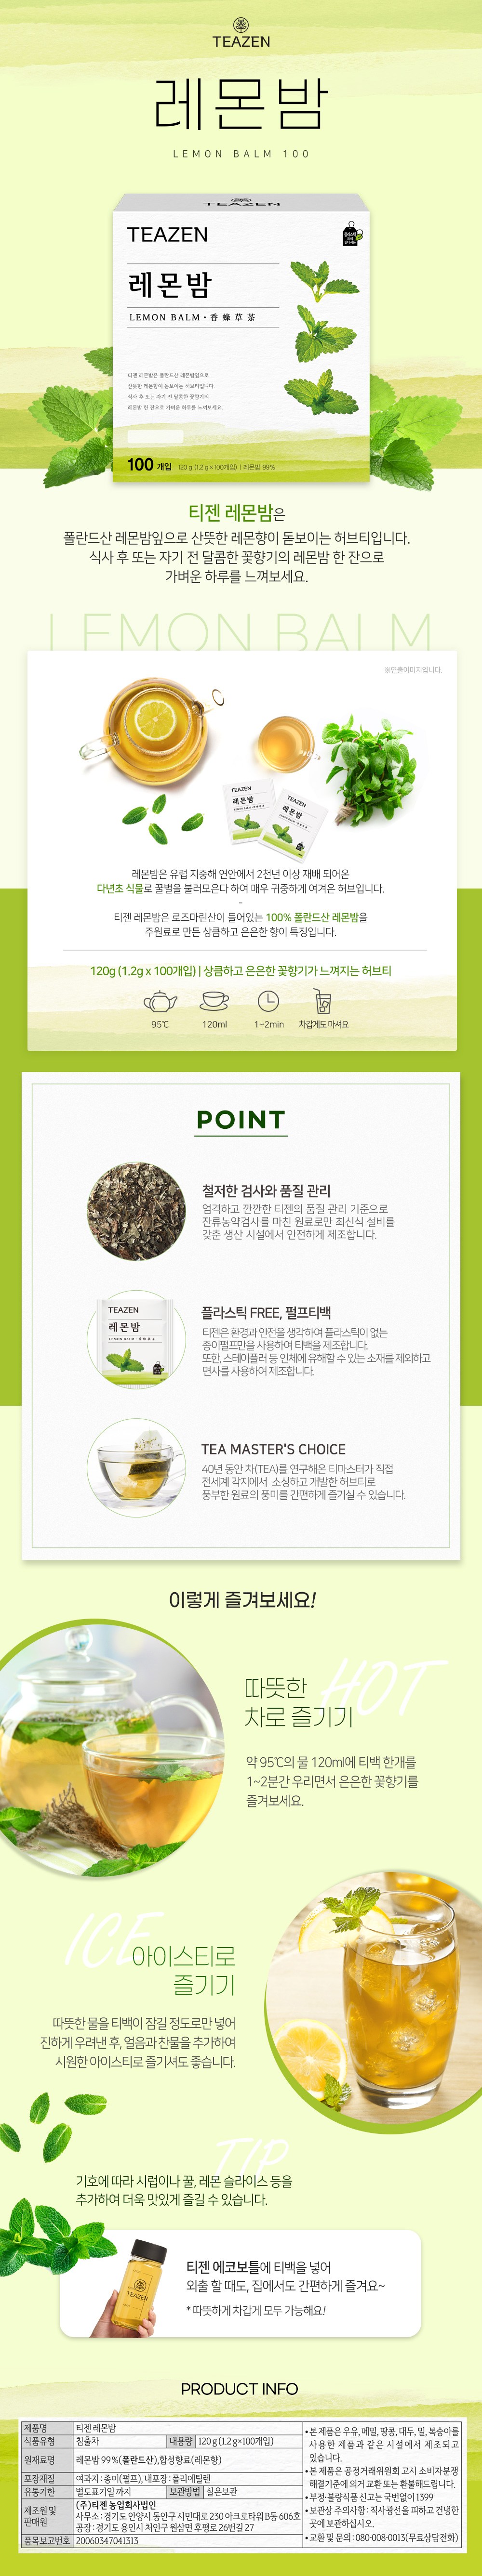 品揃え豊富で [1+1]レモンバーム茶1.2gx100/韓国食品/韓国人気茶 韓国茶 Type:1+1 -  armarinhodasnovidades.com.br